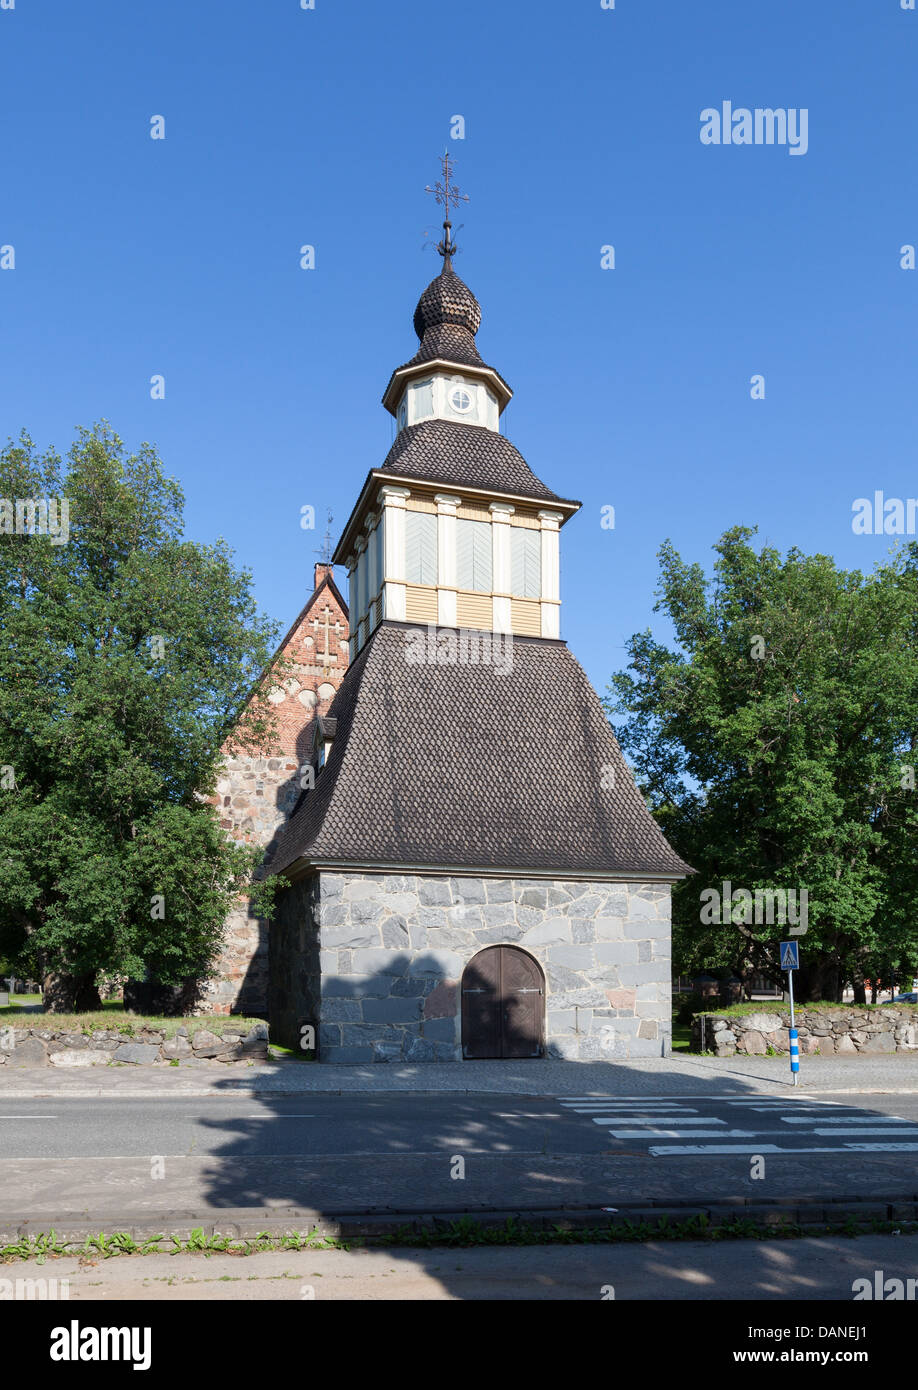 Dans l'église médiévale Lammi, Finlande Banque D'Images